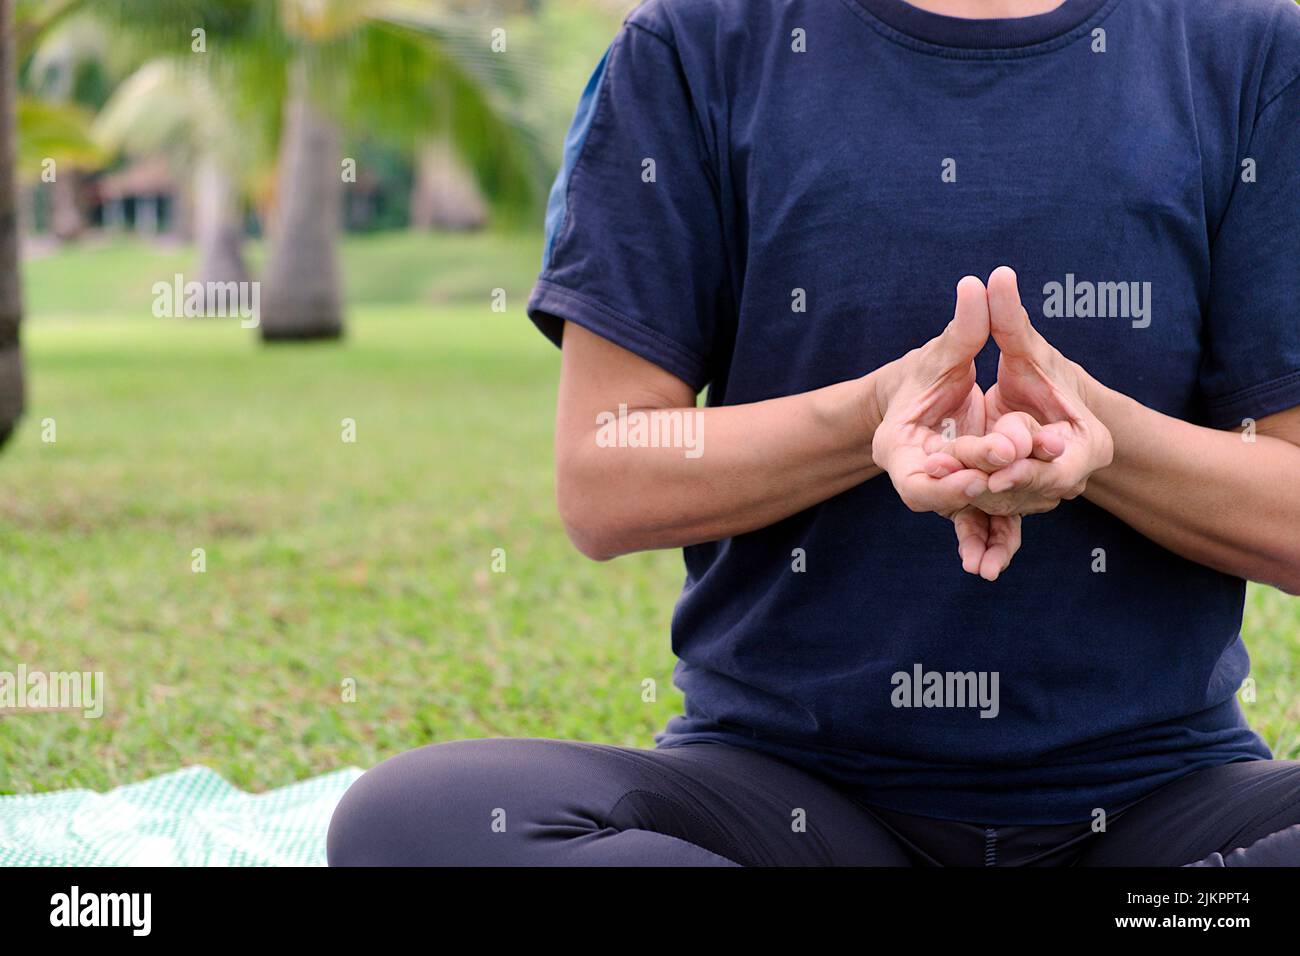 Nahaufnahme eines Halbkörpers einer asiatischen Frau, die morgens auf dem öffentlichen Park Yoga-Übungen mit der Haltung der Finger macht Stockfoto